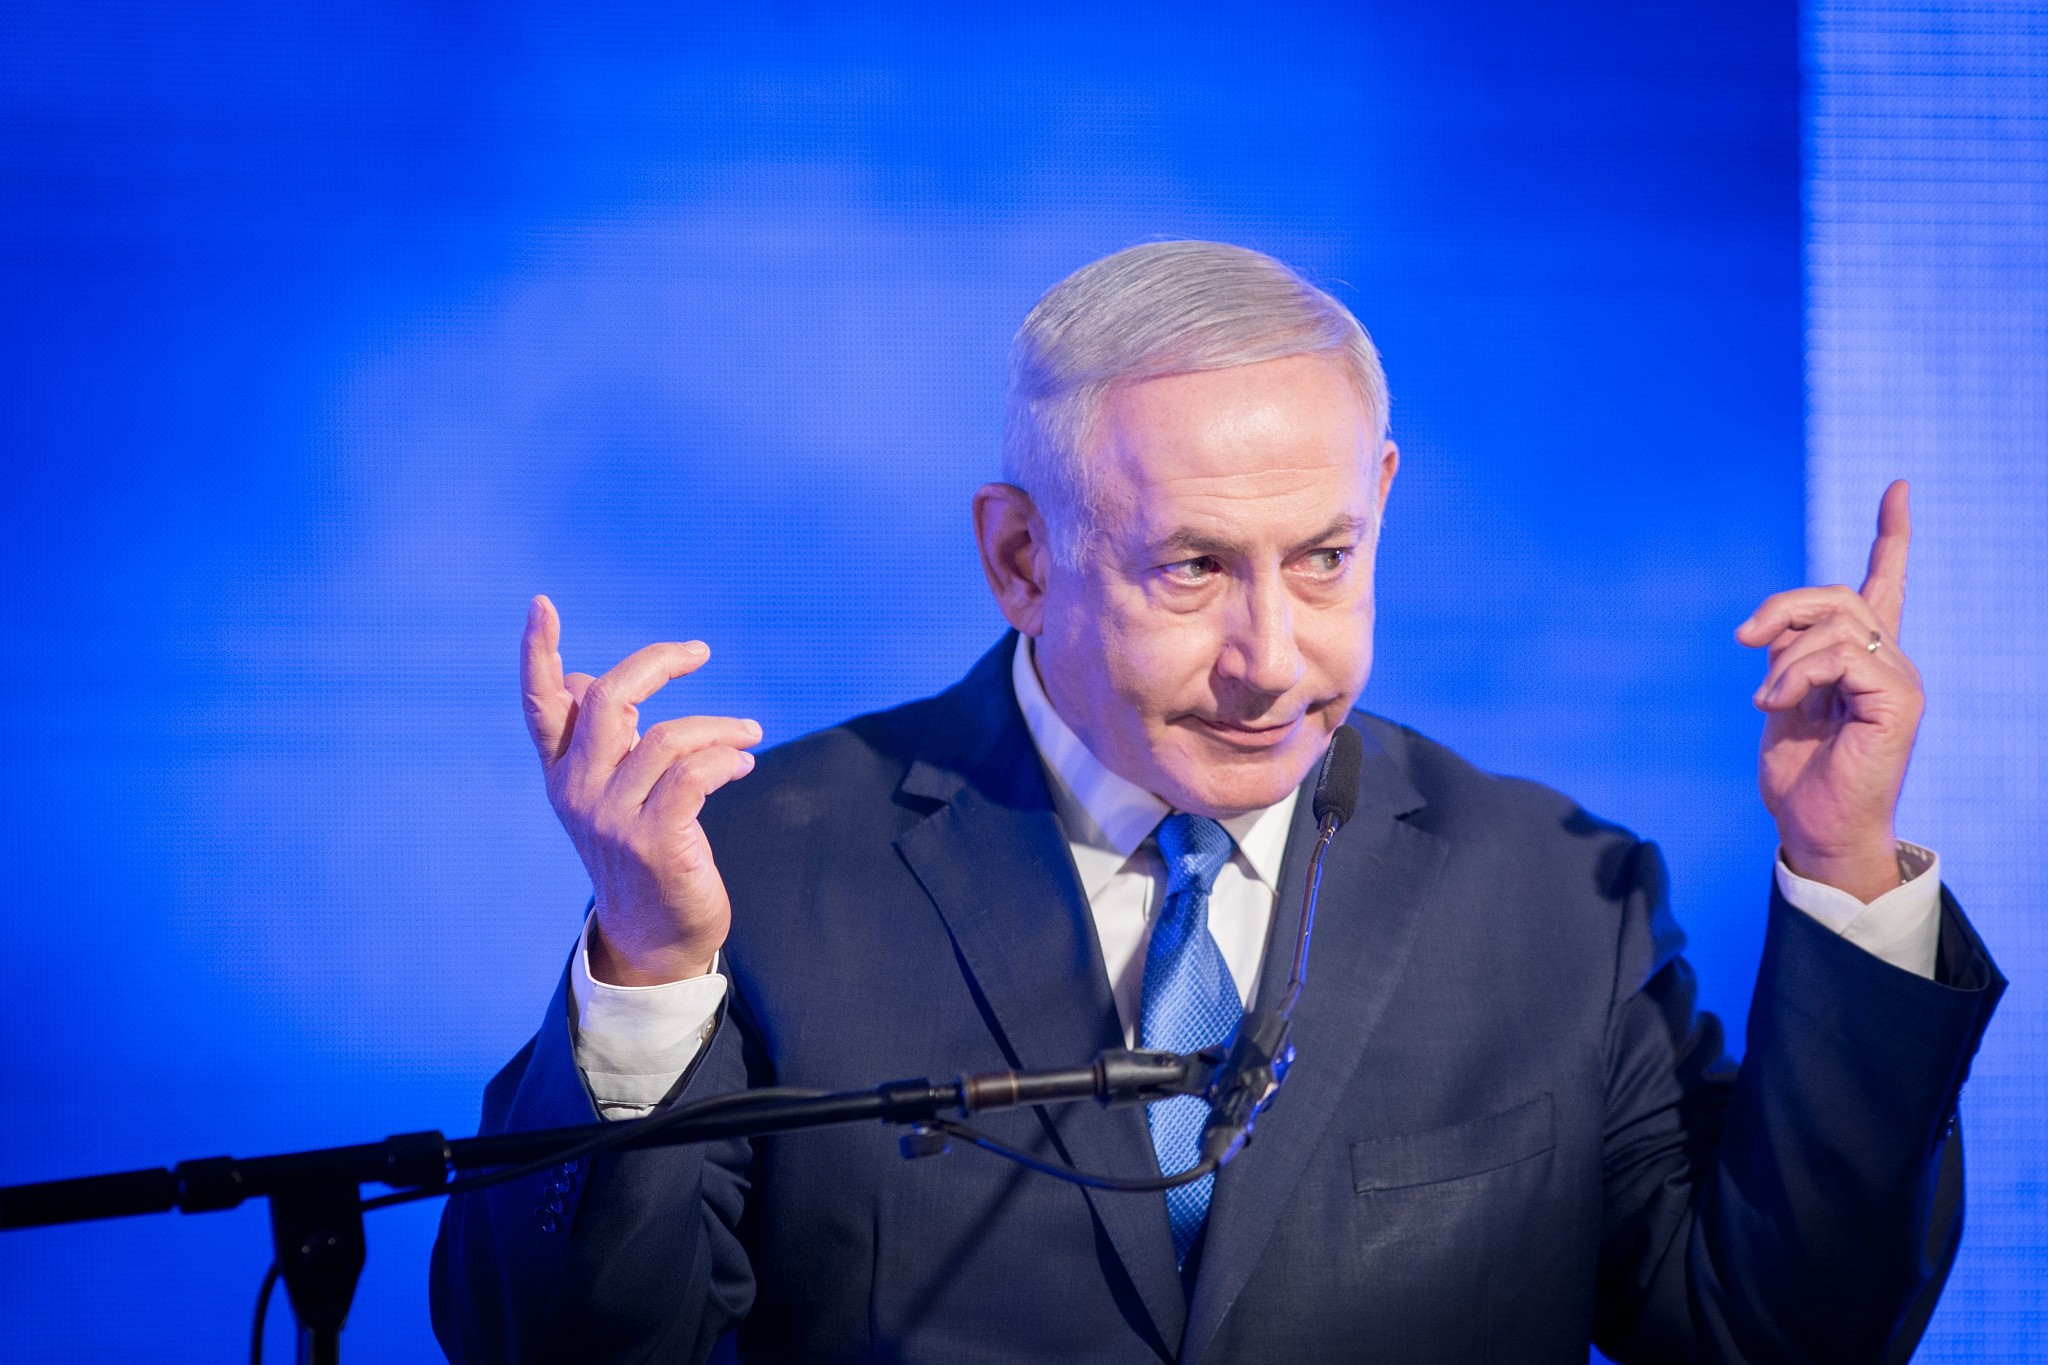 ÙØªÙØ¬Ø© Ø¨Ø­Ø« Ø§ÙØµÙØ± Ø¹Ù âªKing Bibi The Life and Performances of Benjamin Netanyahuâ¬â